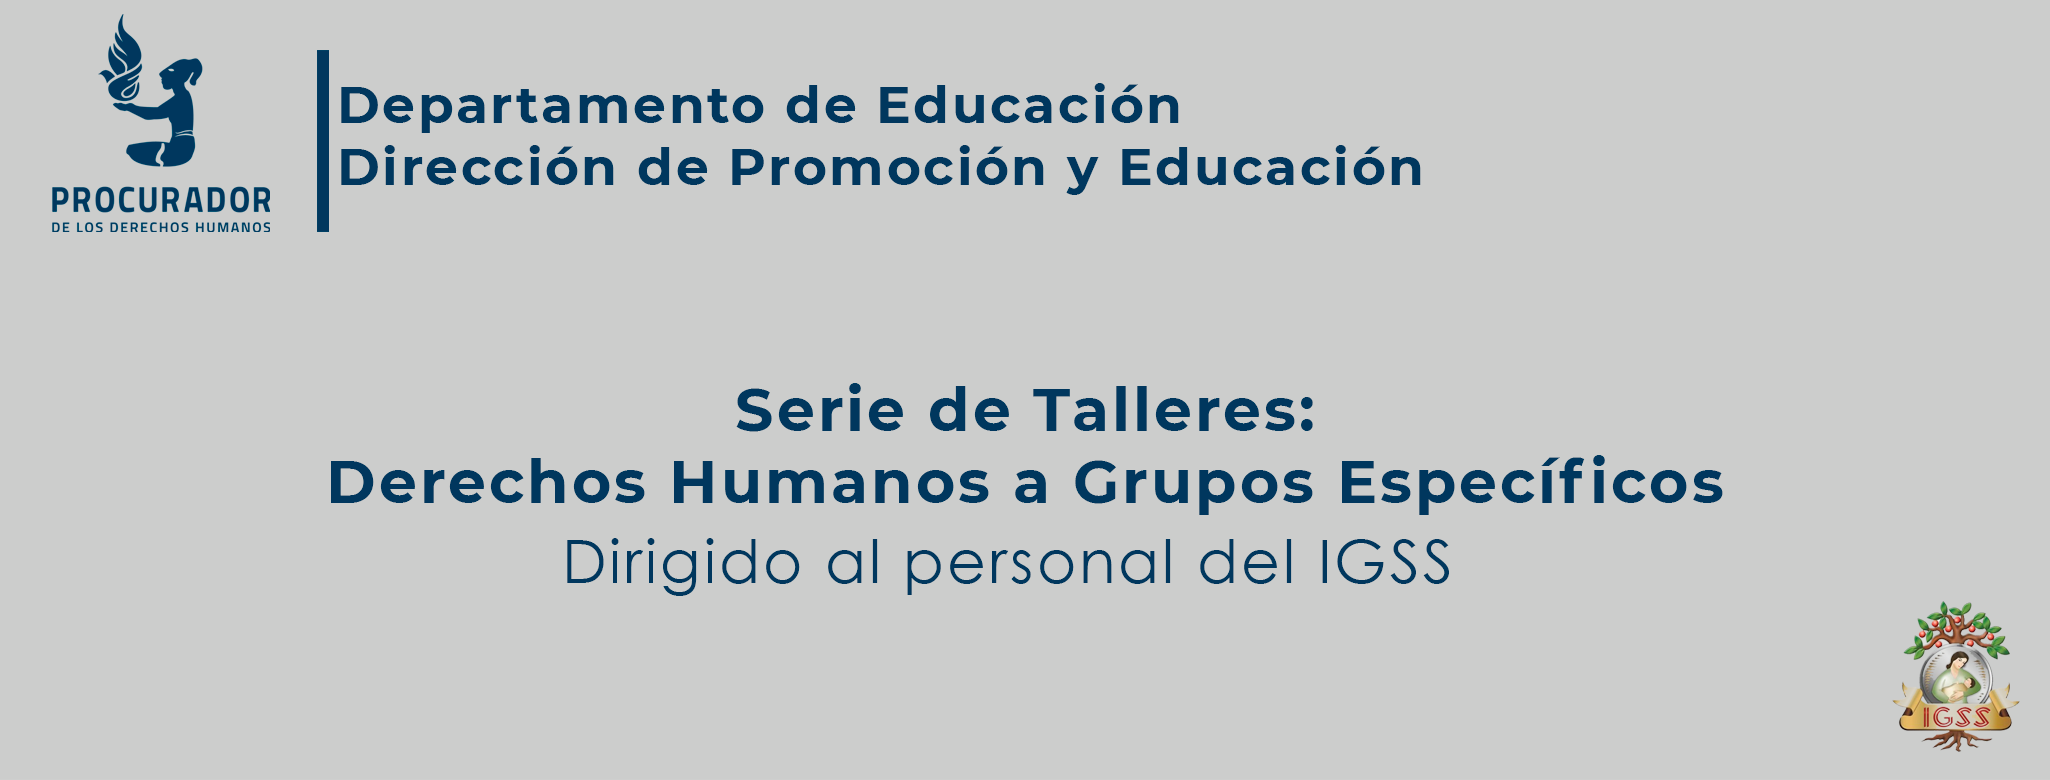 Derechos Humanos  de Grupos Específicos dirigido al Instituto de Seguridad Social IGSS